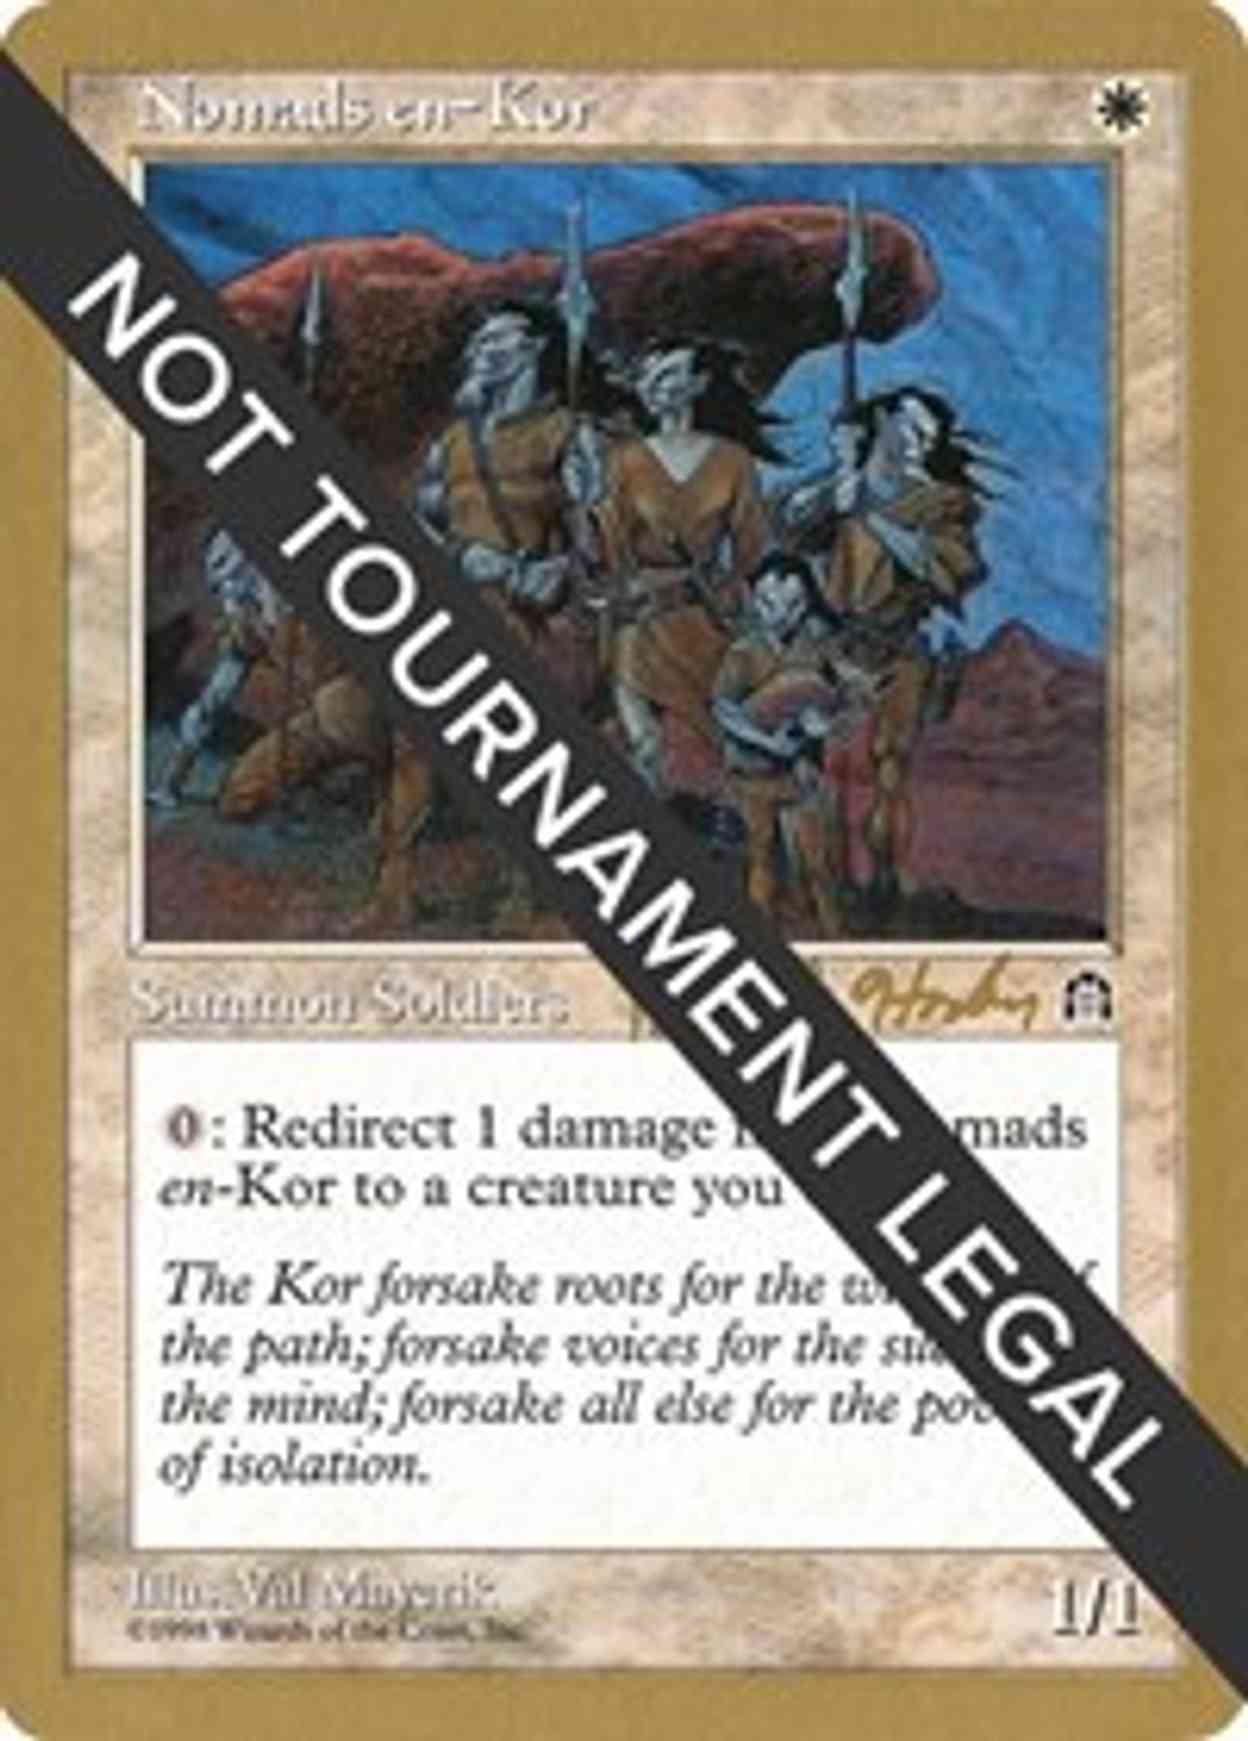 Nomads en-Kor - 1998 Brian Hacker (STH) magic card front